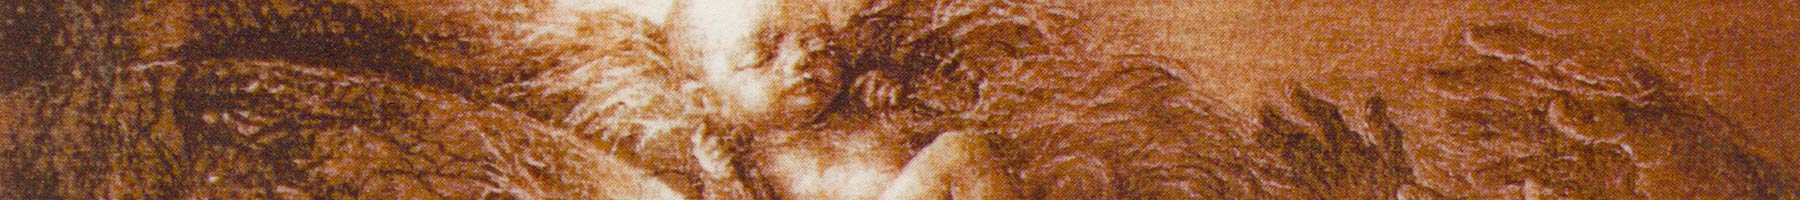 illustration of Jesus in a manger